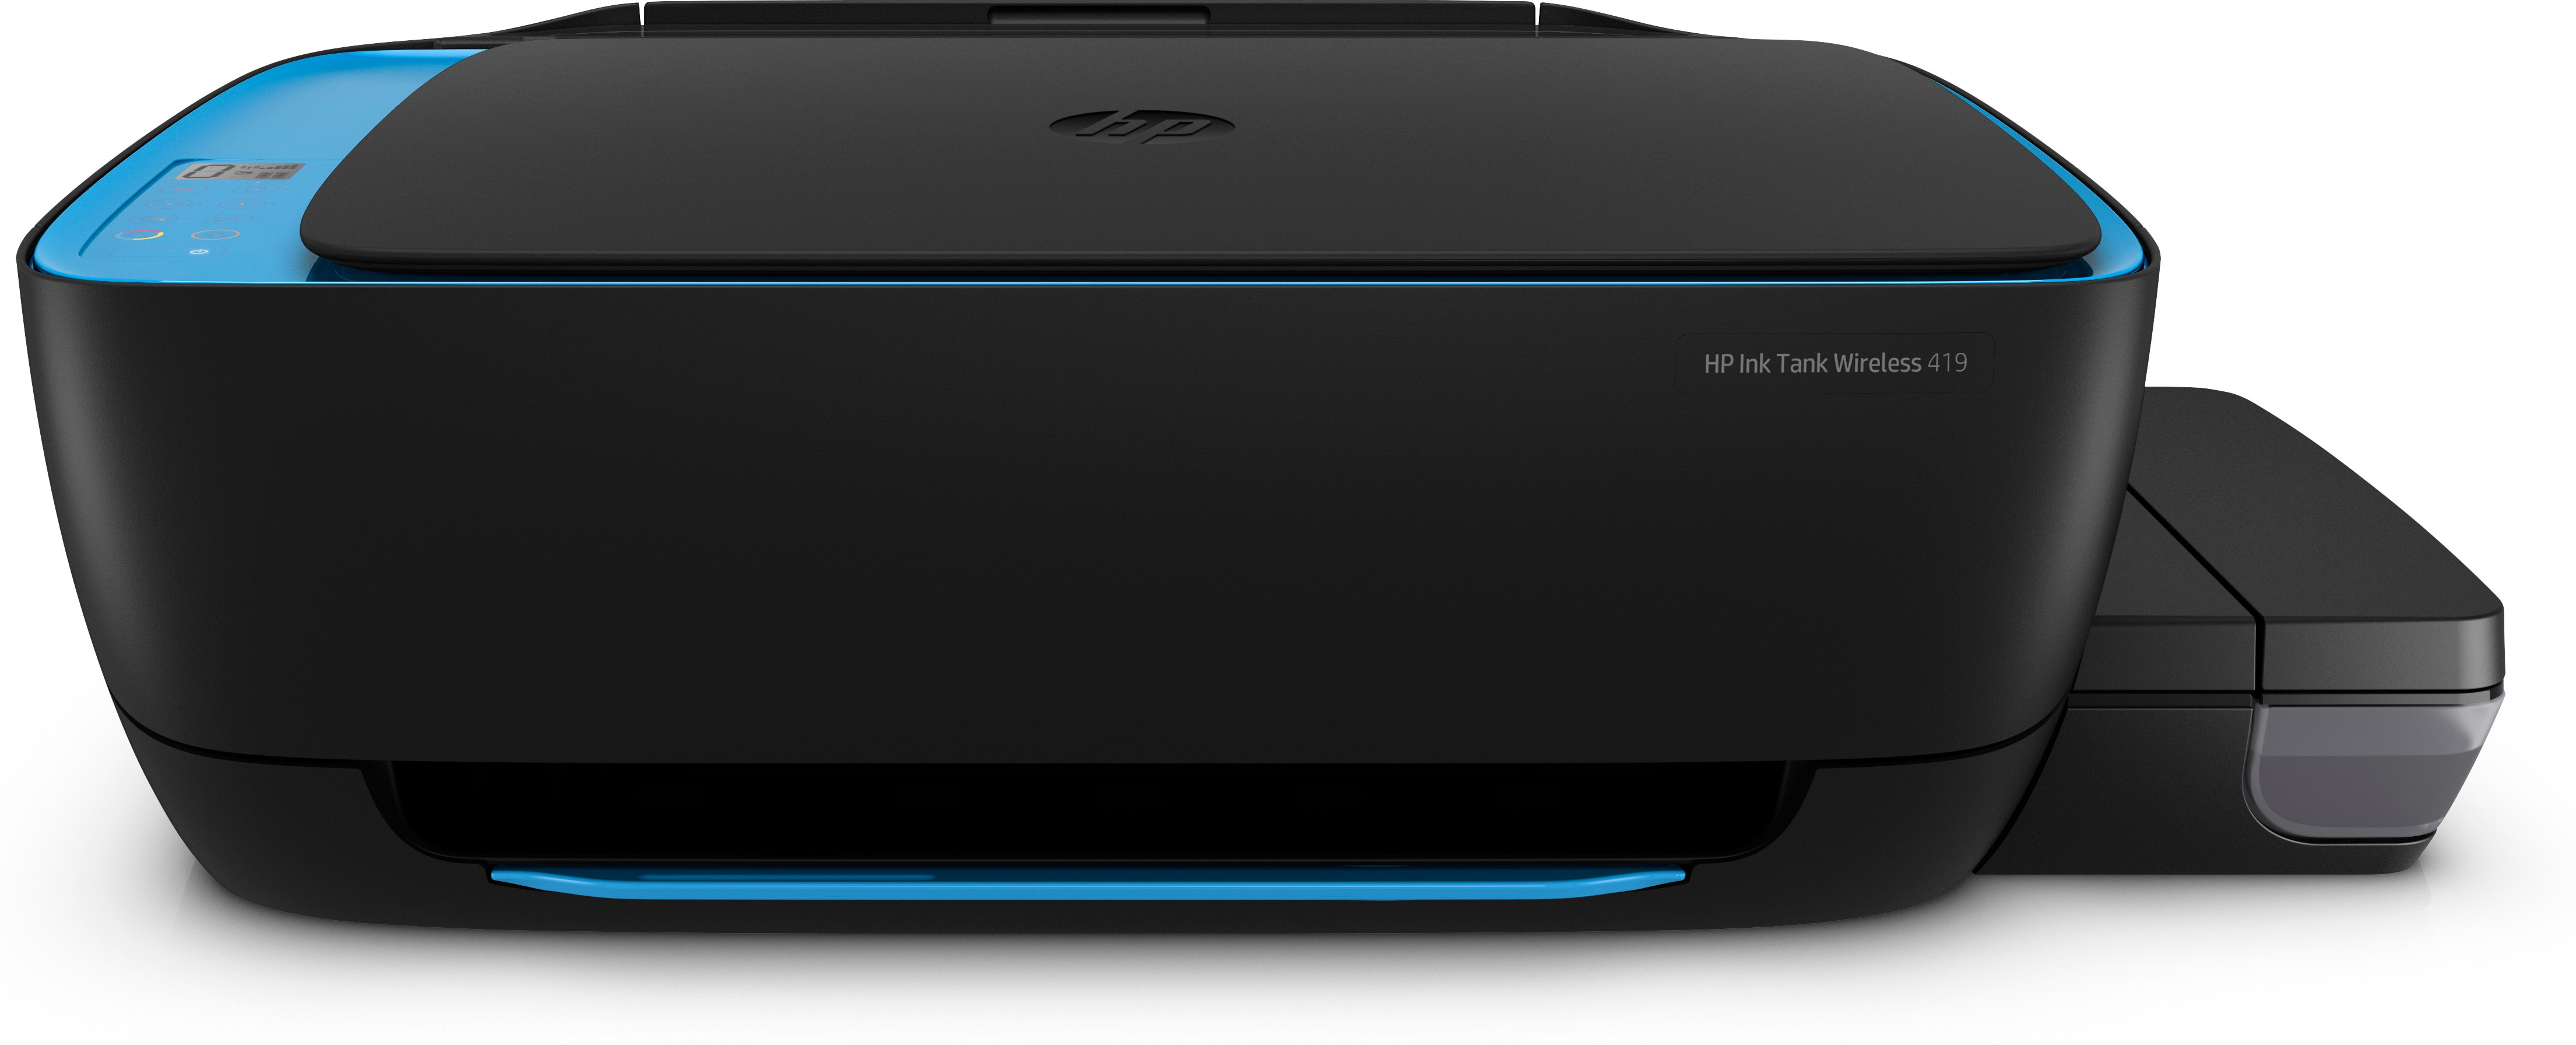 HP Ink Tank Wireless 419 - Thermal Inkjet - Farbdruck - 4800 x 1200 DPI - Farbkopieren - A4 - Schwarz